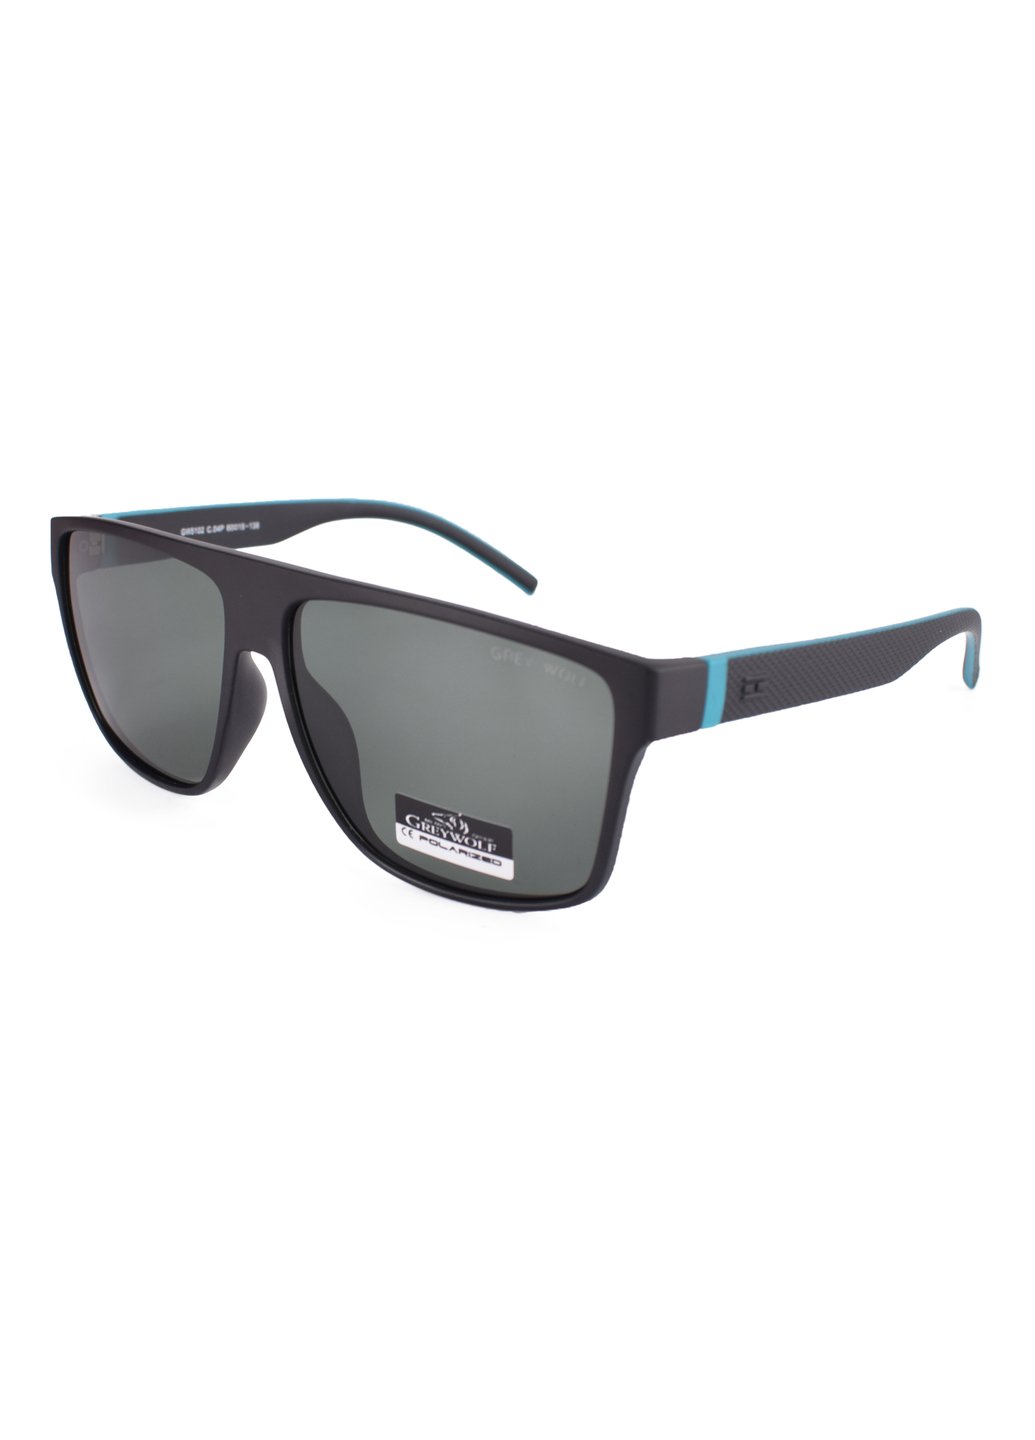 Купить Черные мужские солнцезащитные очки Gray Wolf с поряризацией GW5102 121008 в интернет-магазине